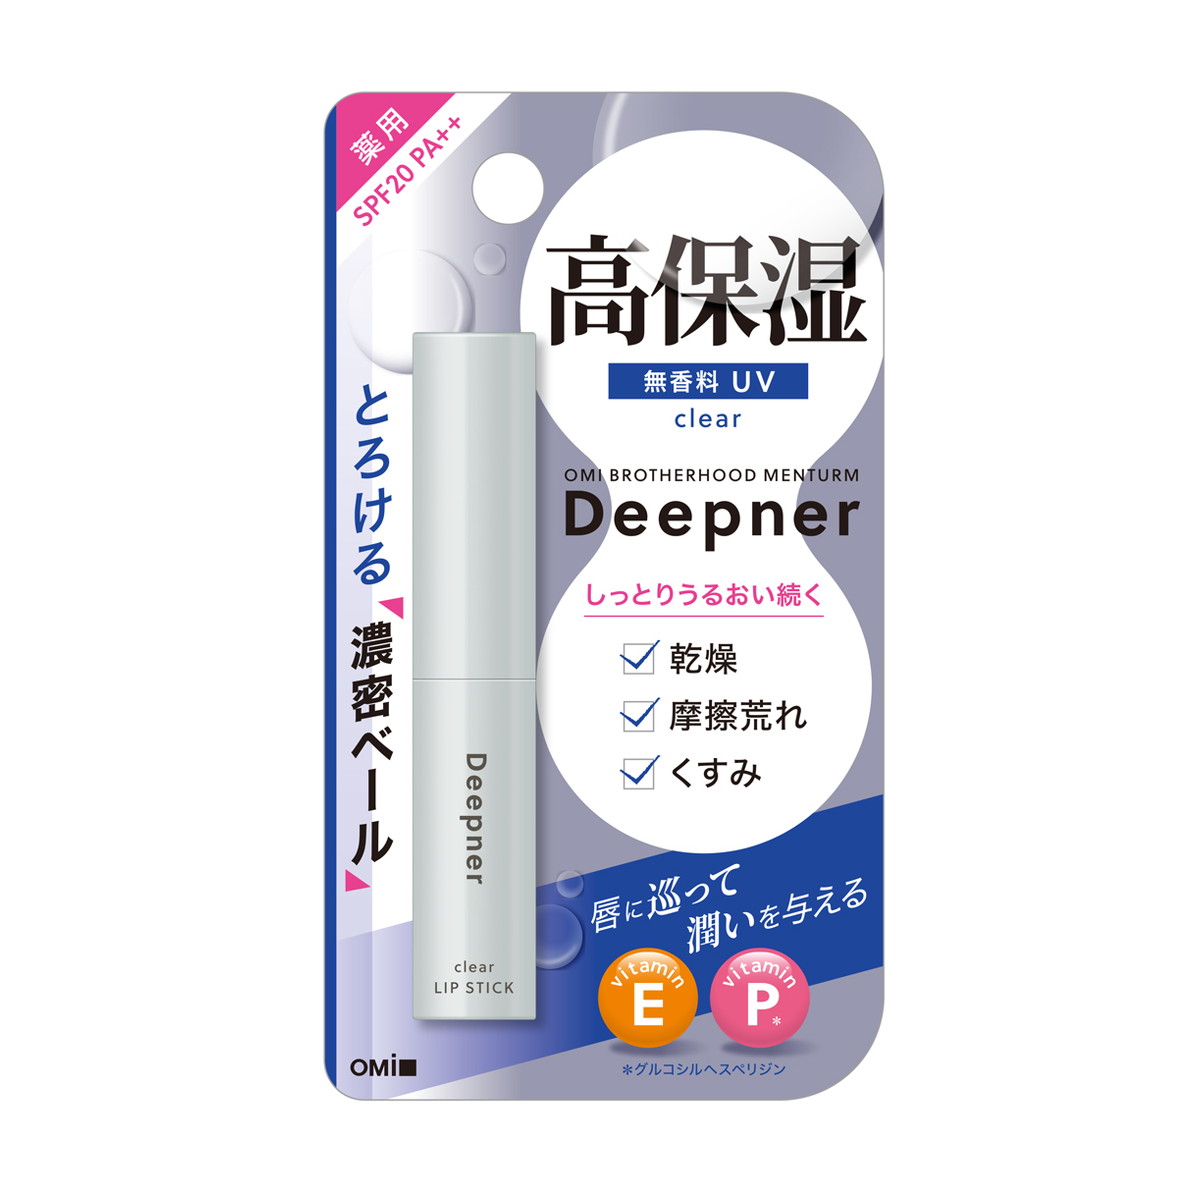 【歳末セール】近江兄弟社 メンターム ディープナー 薬用 リップ 無香料 UV 2.3g